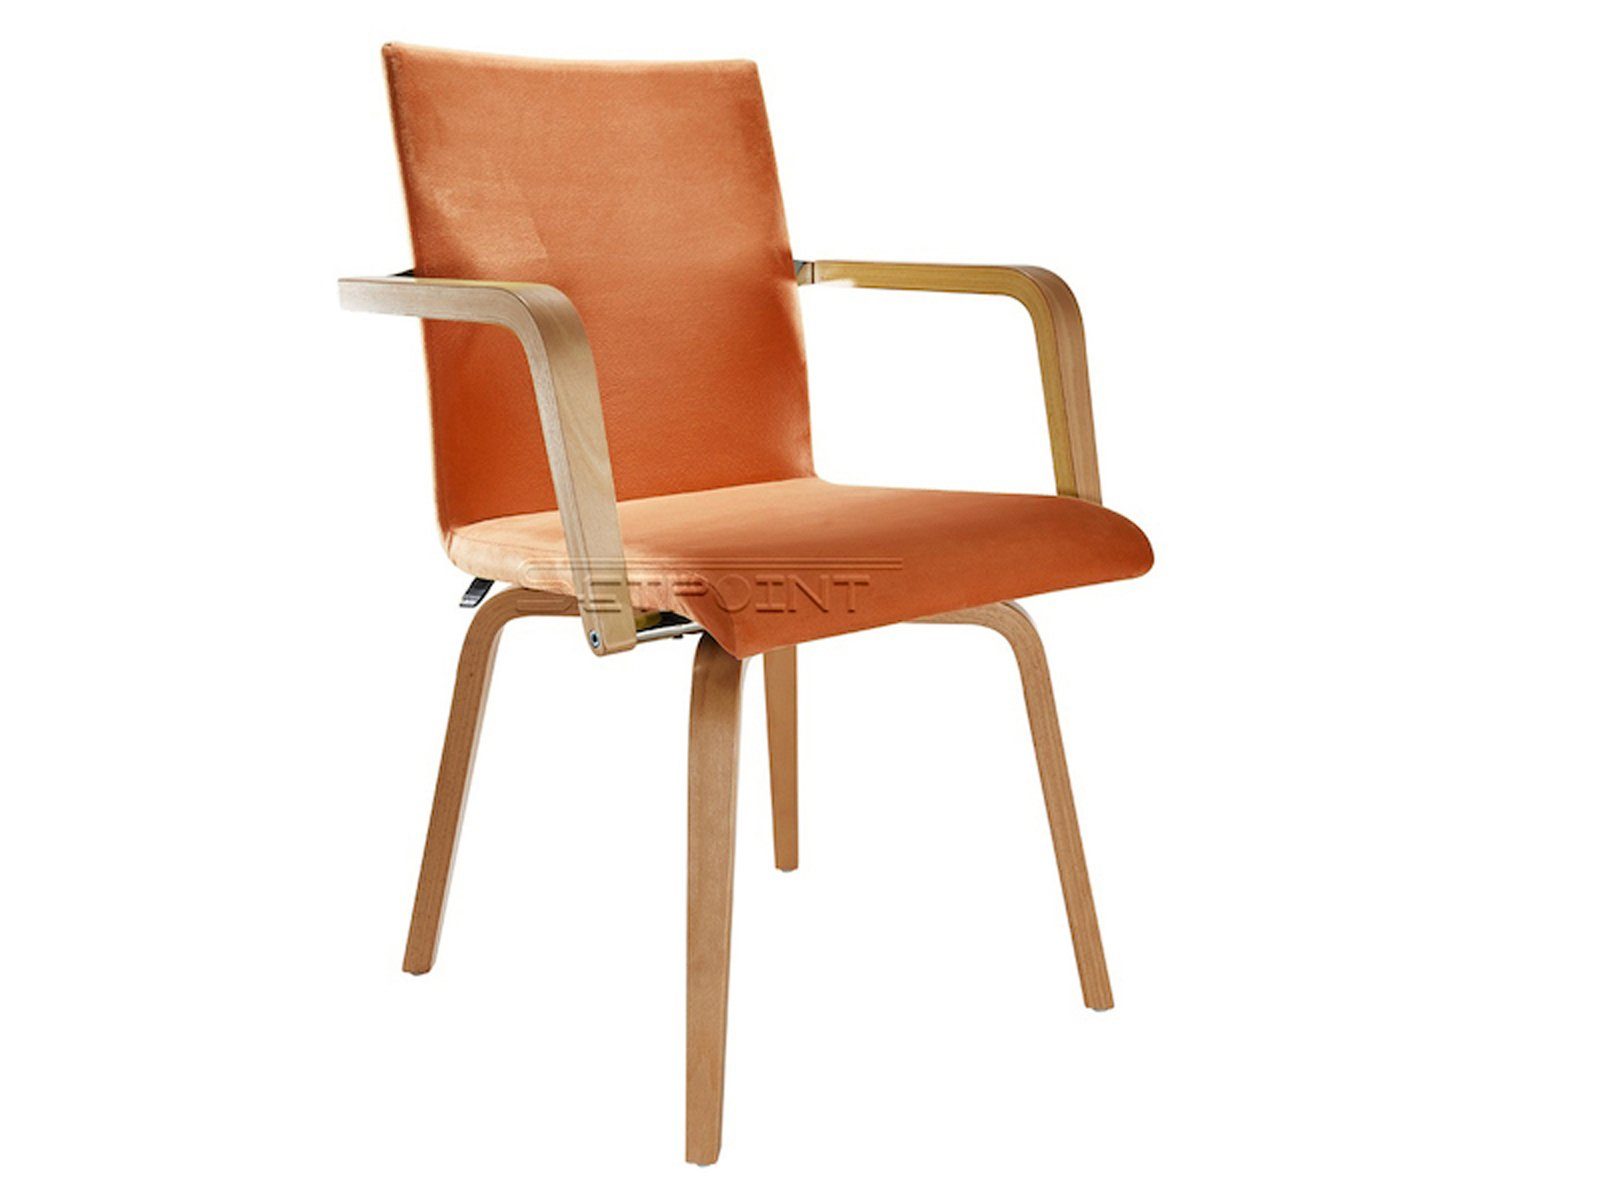 Mauser Sitzkultur Armlehnstuhl, ergonomischer Senioren-stuhl mit Armlehnen, Besucherstuhl Stoffbezug Terracotta